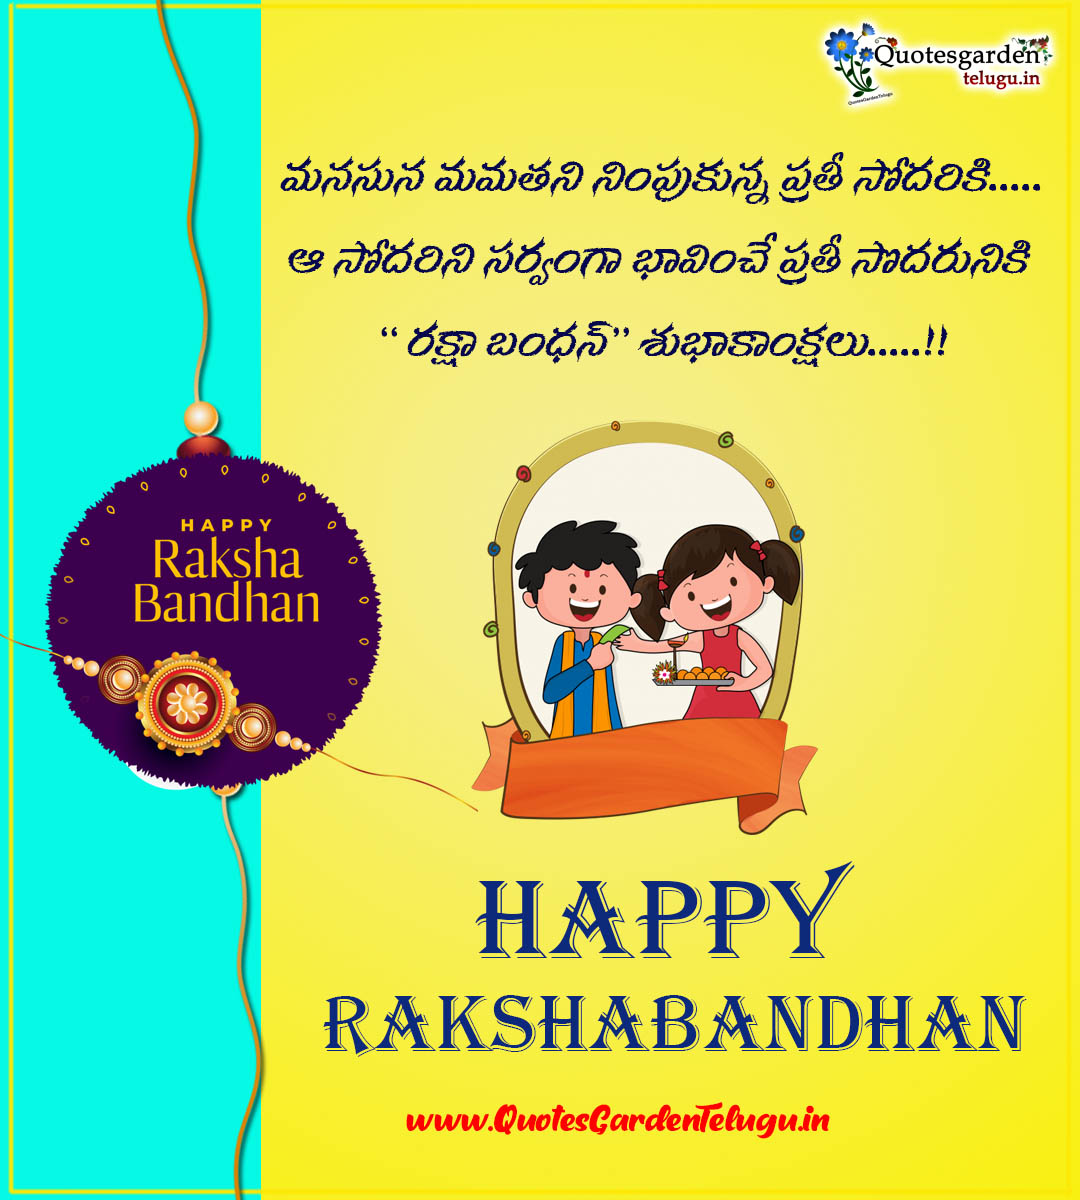 Latest Raksha Bandhan wishes greetings in telugu images free downloads |  QUOTES GARDEN TELUGU | Telugu Quotes | English Quotes | Hindi Quotes |